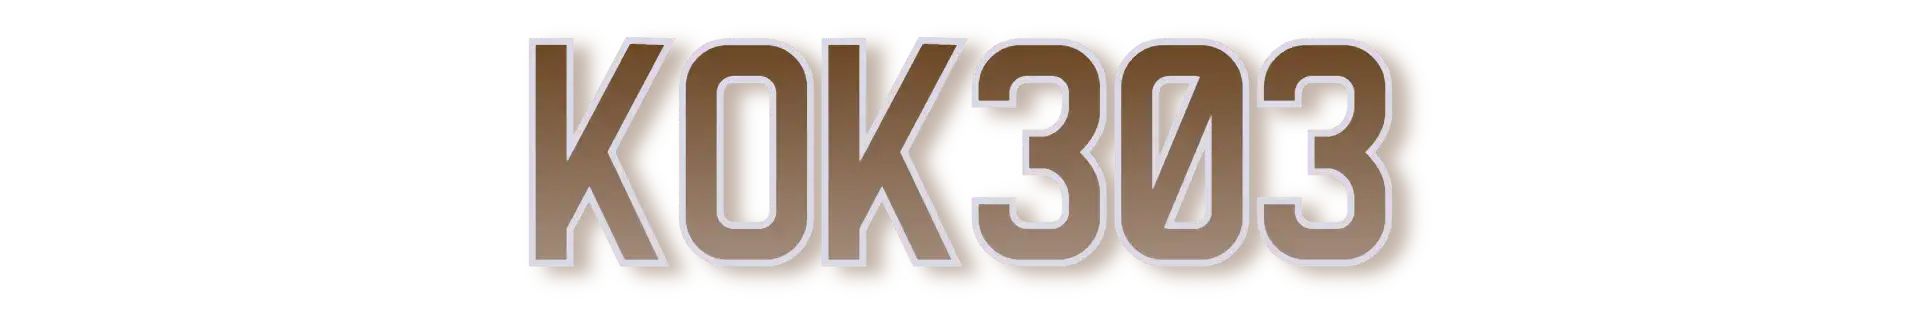 Kok303